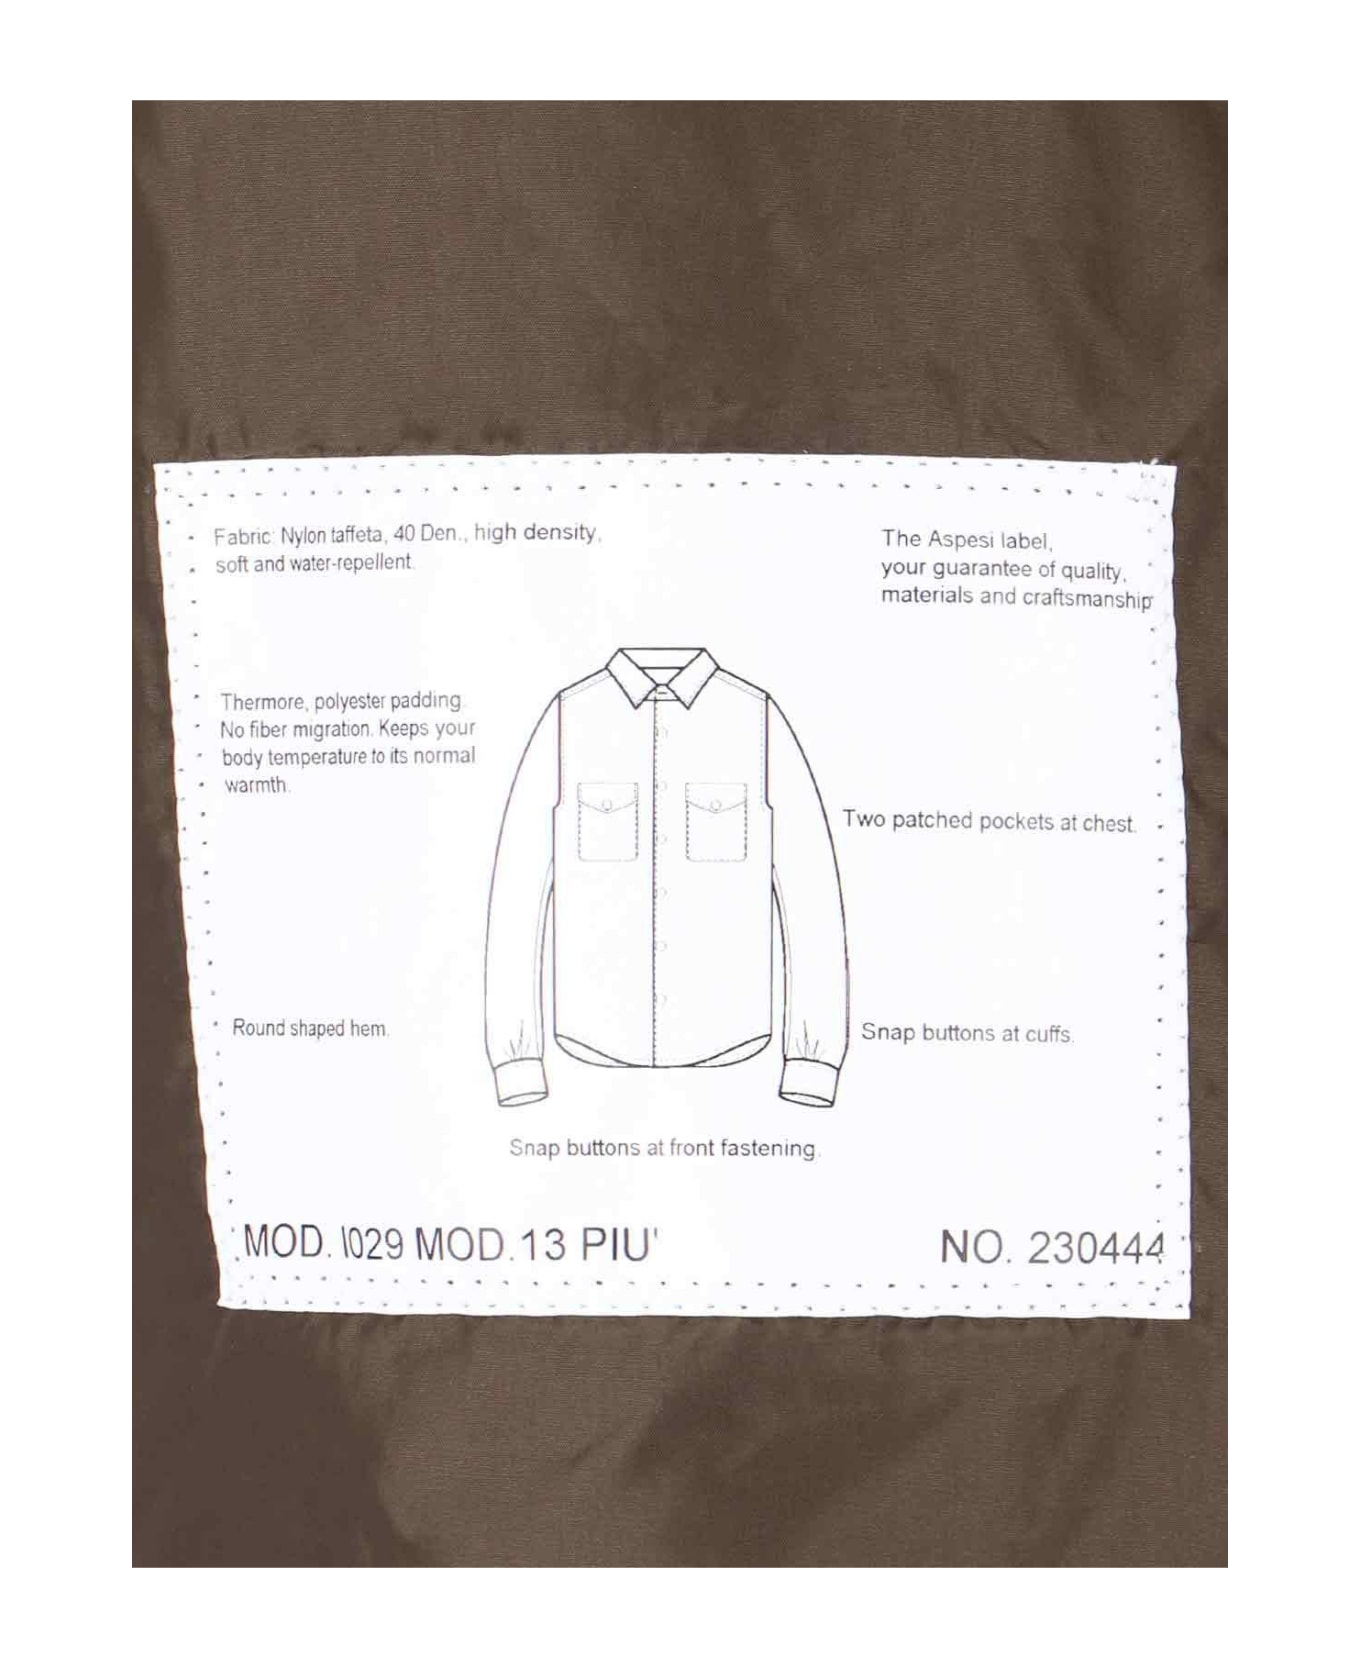 Aspesi Nylon Shirt Jacket - Militare ジャケット